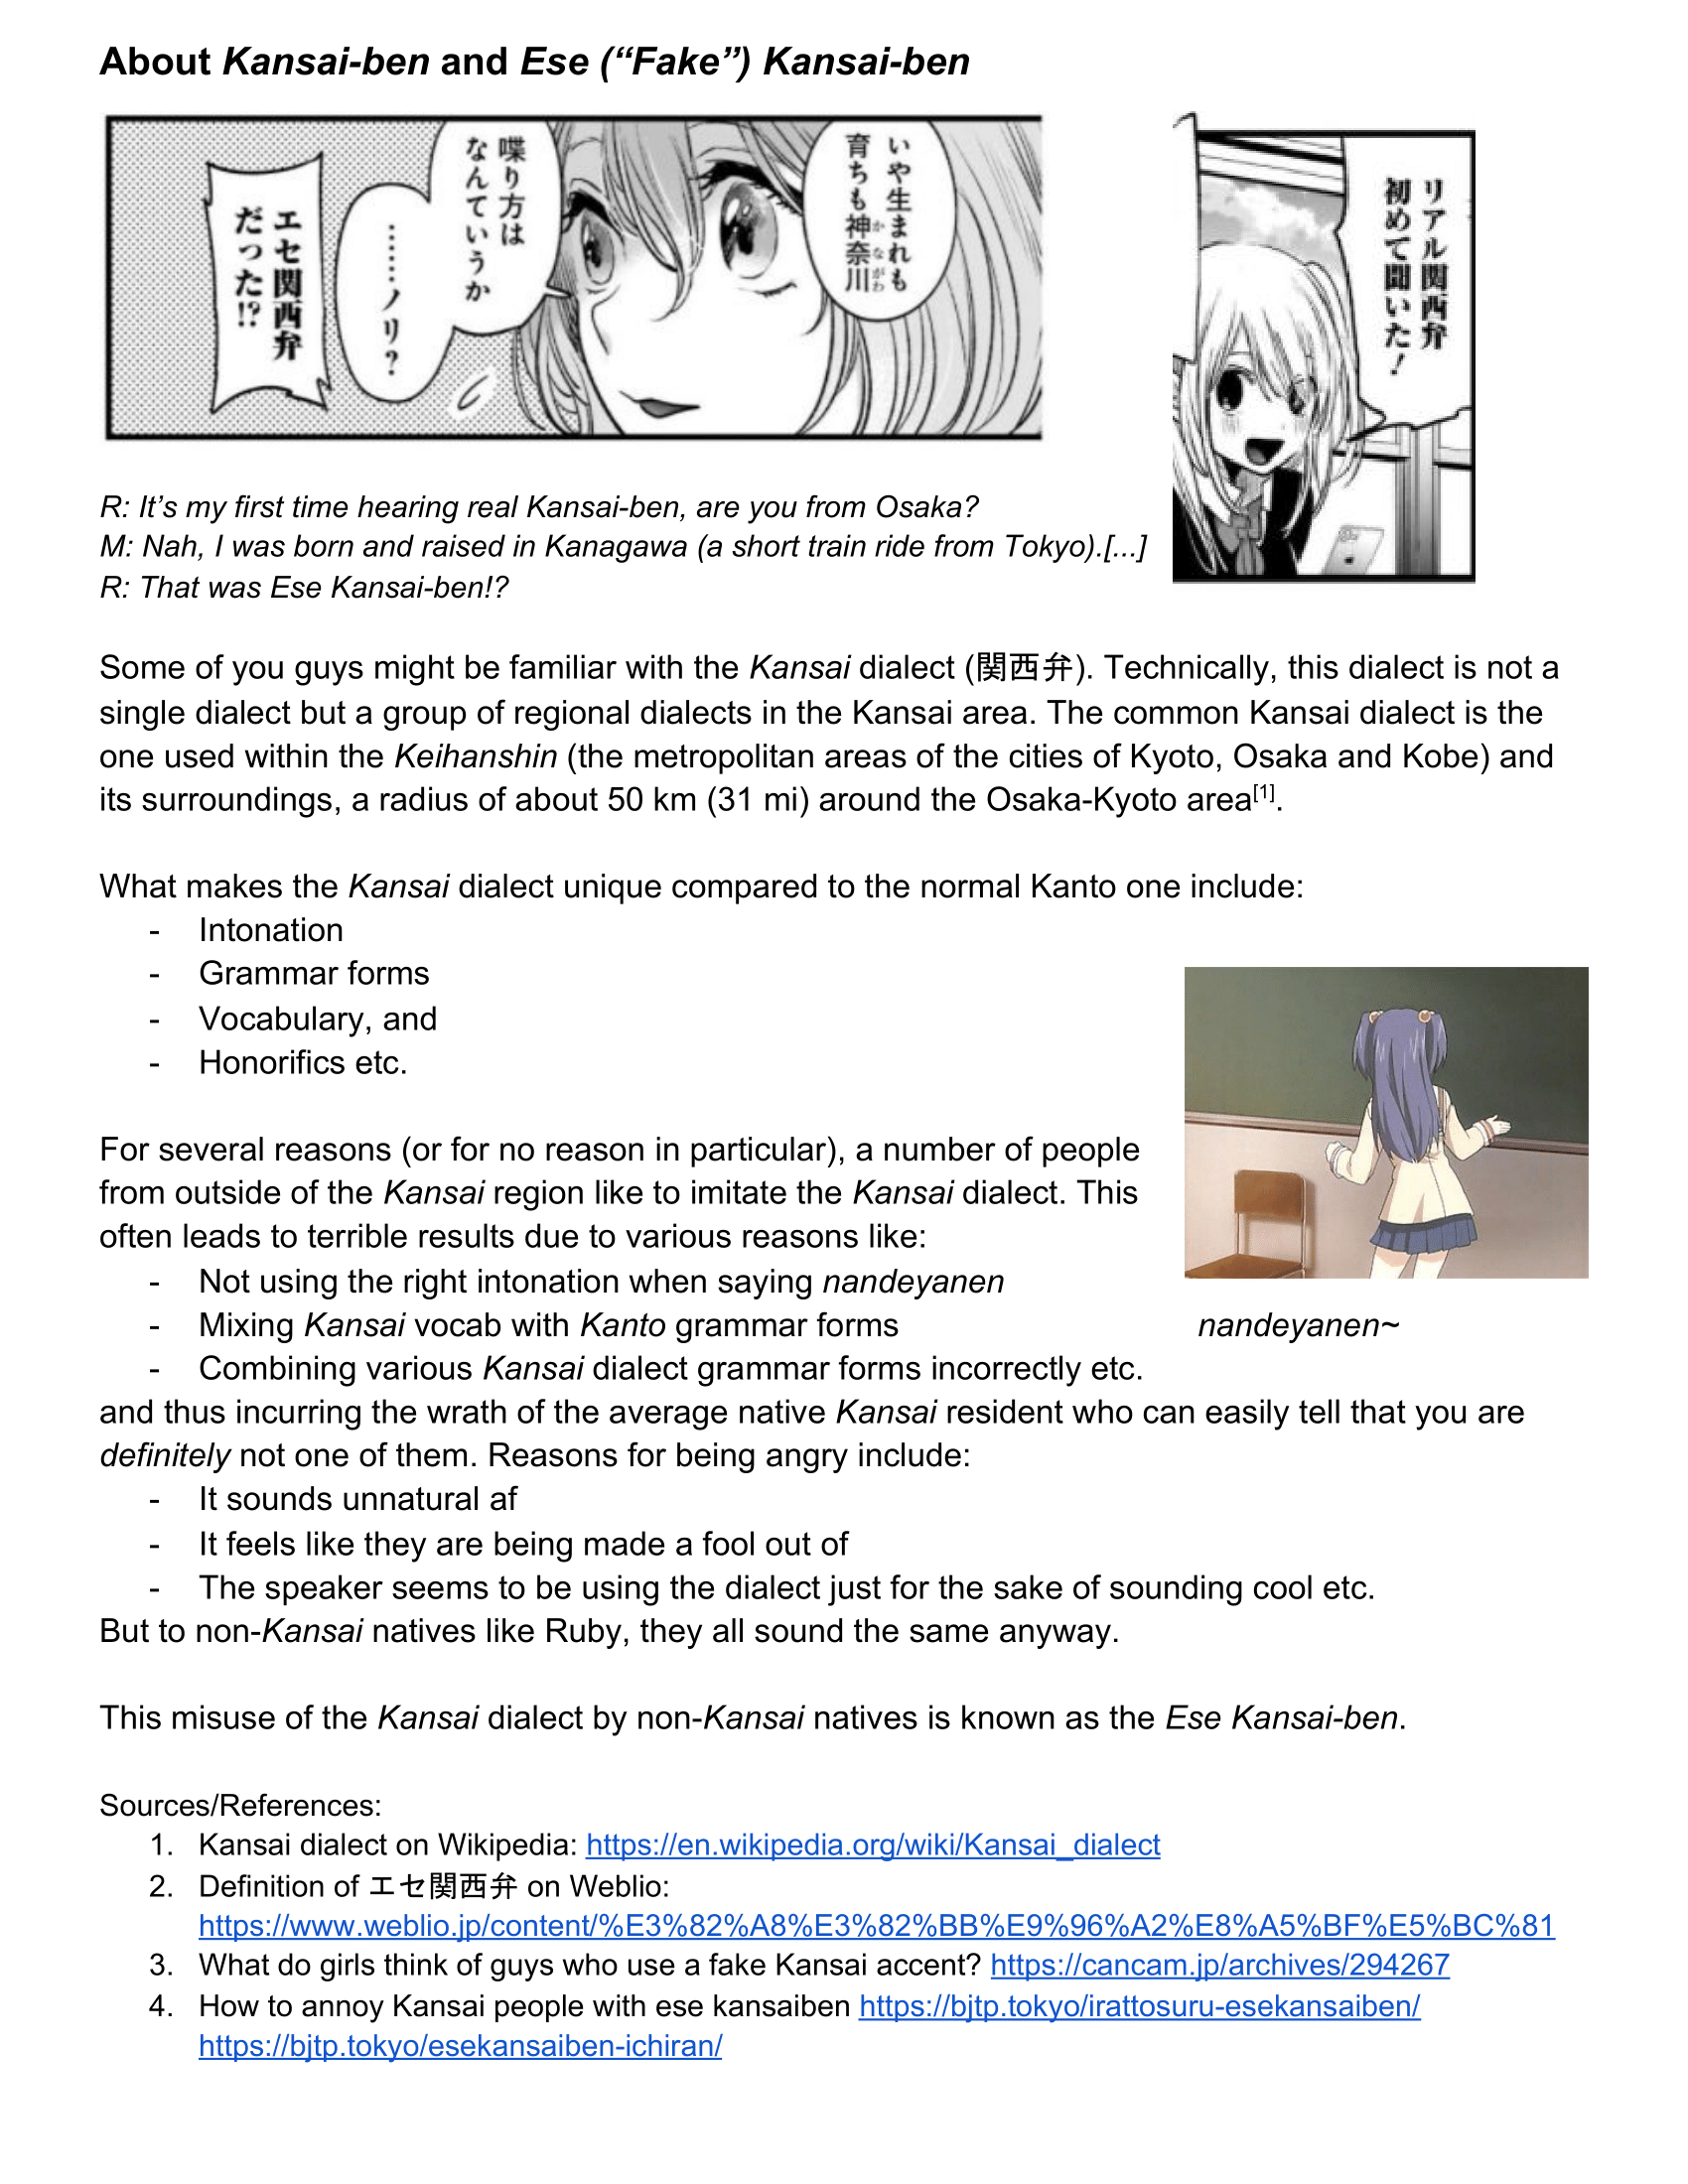 Oshi no Ko manga, read Oshi no Ko, Oshi no Ko anime, read Oshi no Ko manga, Oshi no Ko manga online, Oshi no Ko chapters